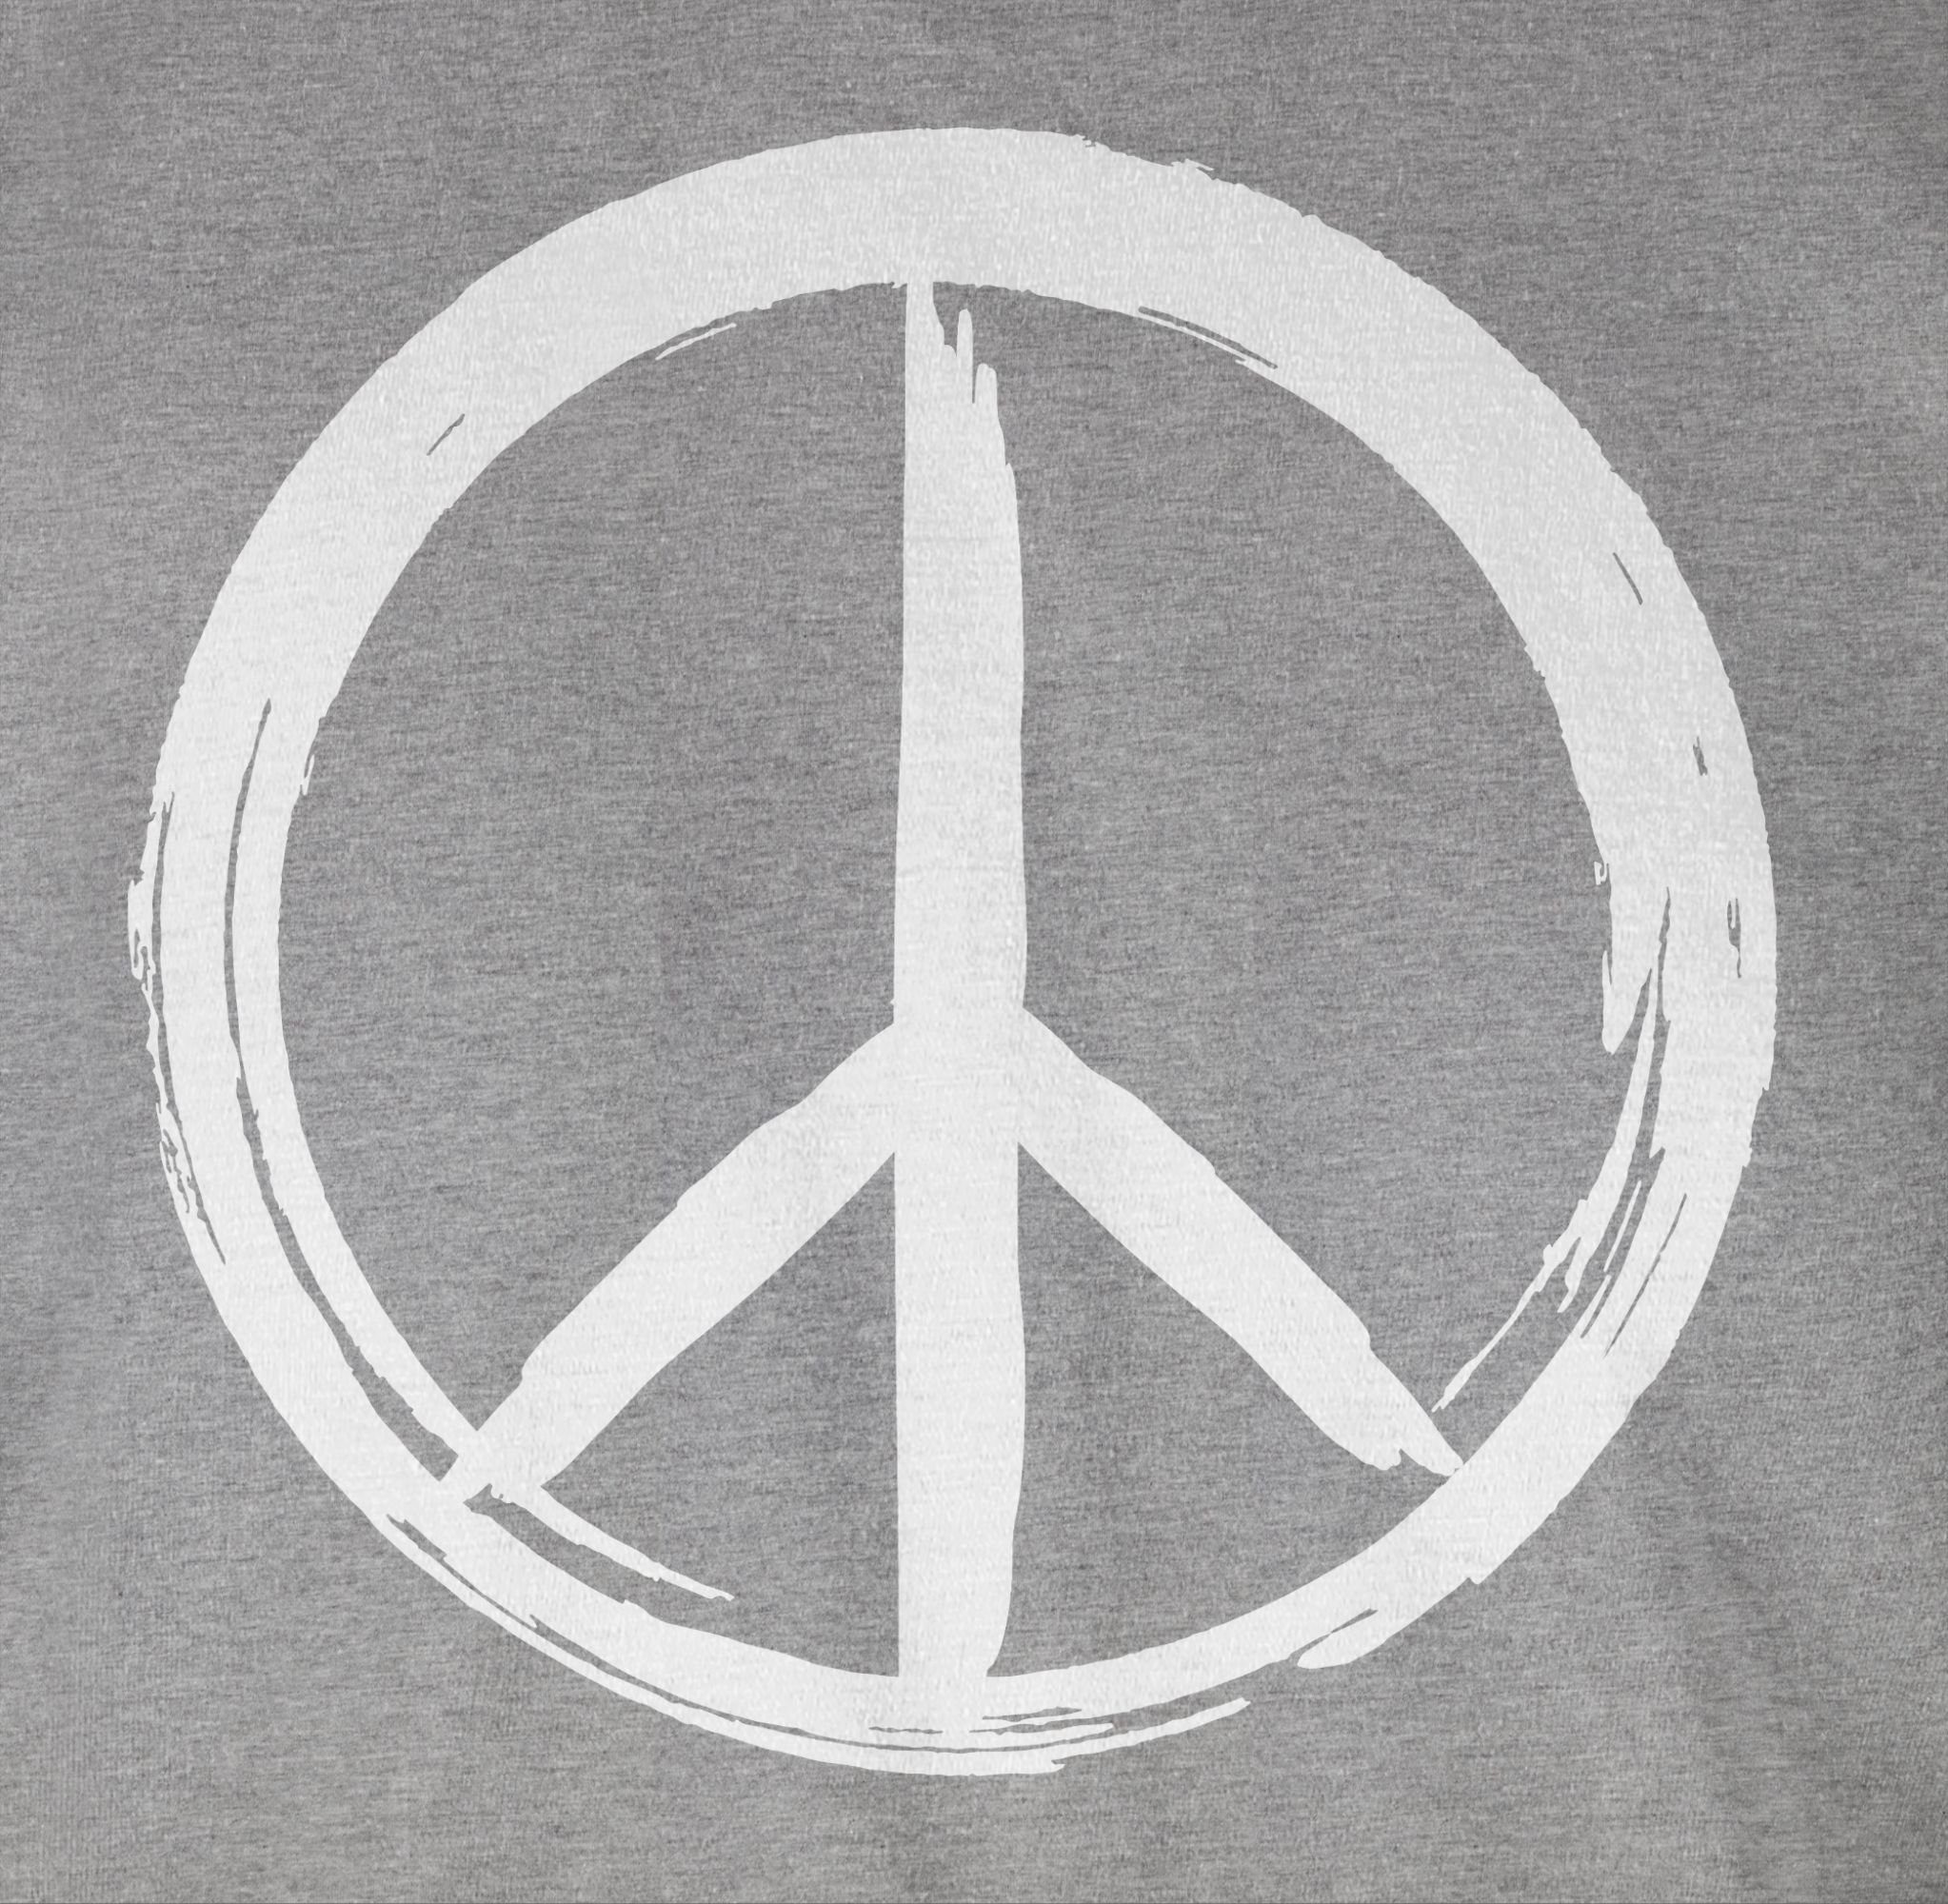 Shirtracer T-Shirt meliert weiß Pinsel Optik 03 Sprüche - Grau Statement Peace Zeichen